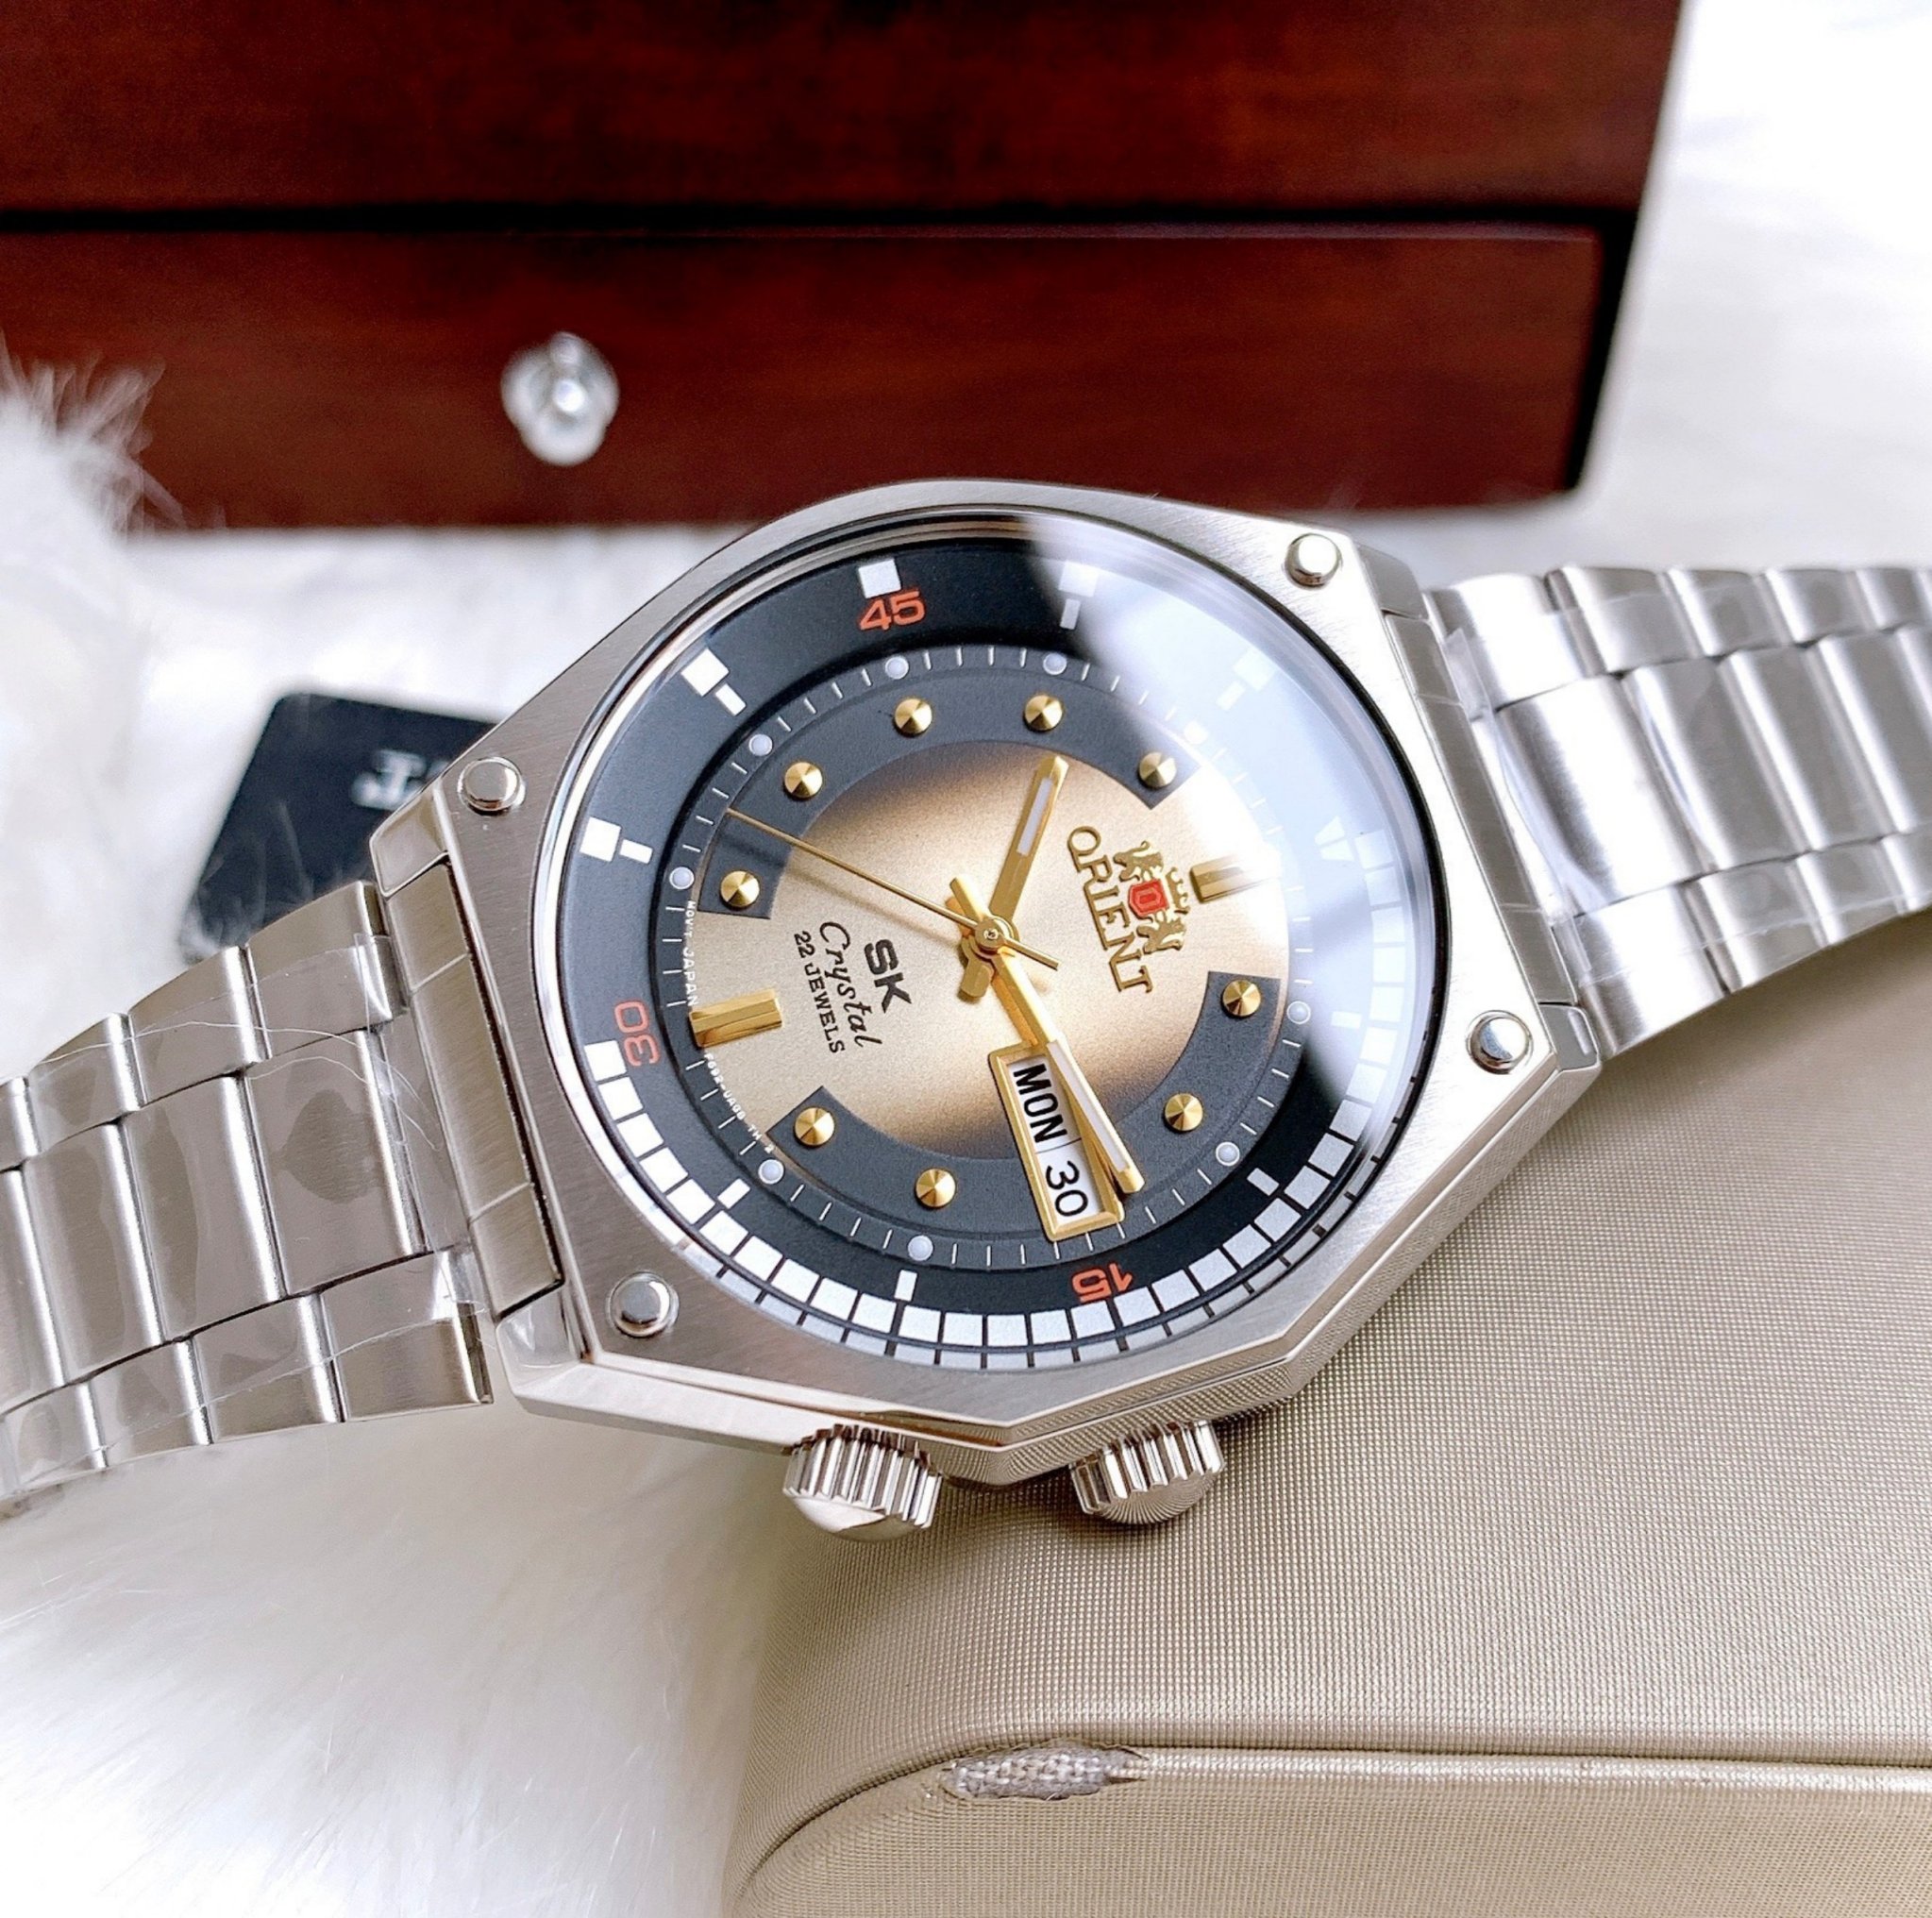 đồng hồ nam chính hãng orient sk mặt vàng ra-aa0b01g19b bản mới size 42,lịch ngày-máy cơ tự động automatic-dây kim loại thép cao cấp 1